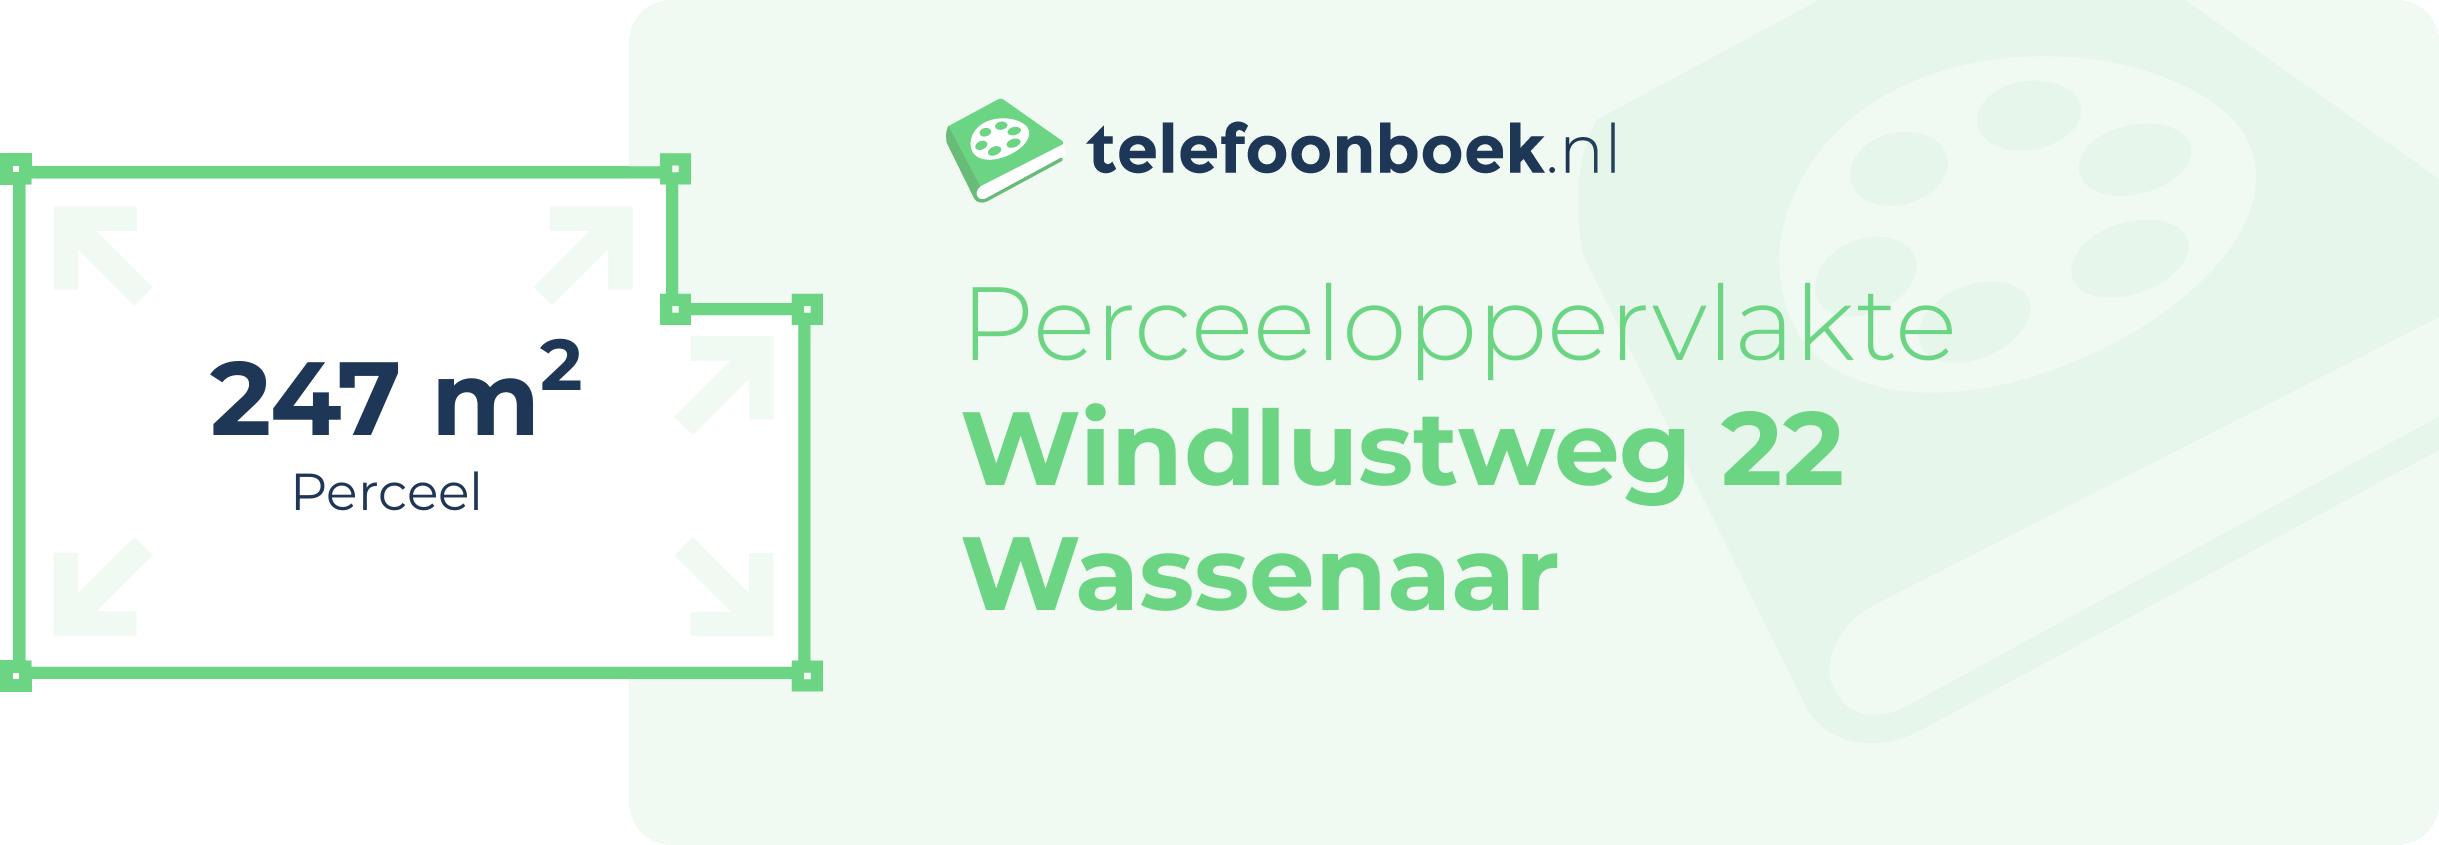 Perceeloppervlakte Windlustweg 22 Wassenaar